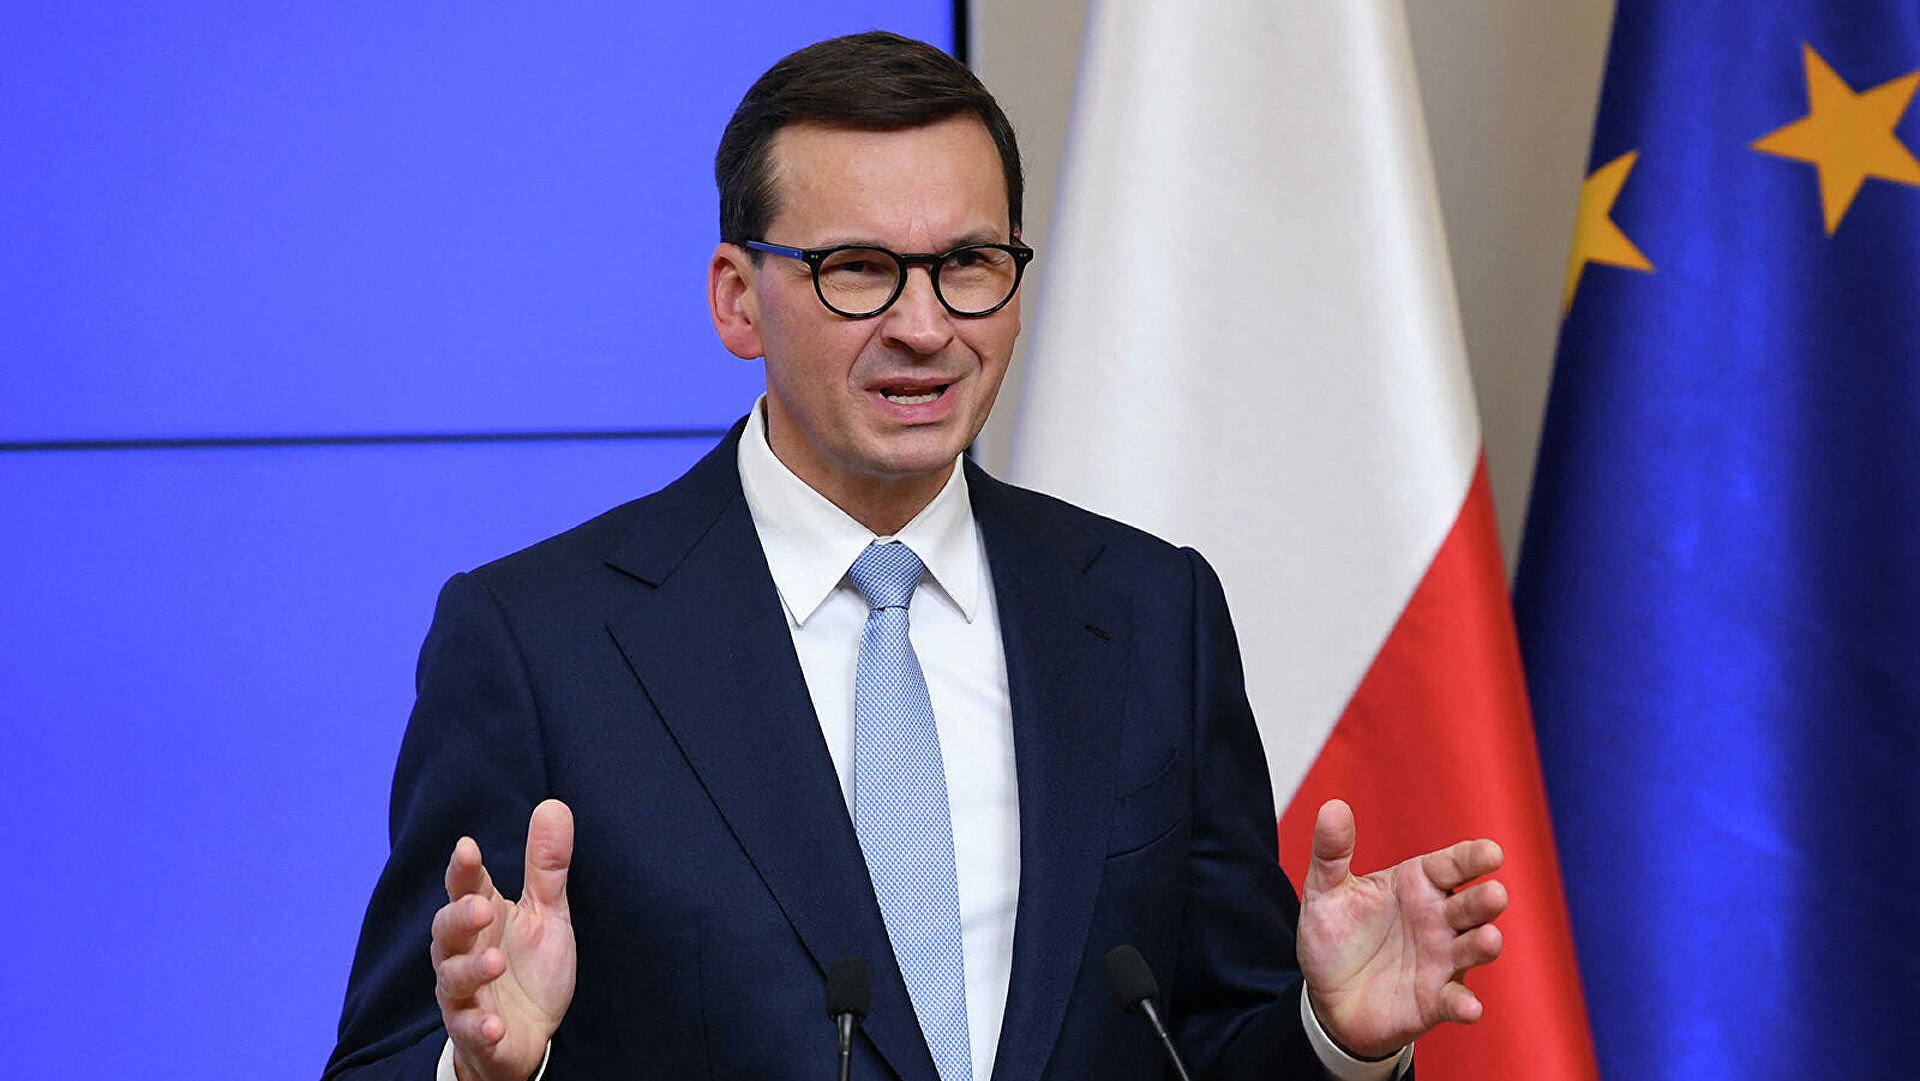 Польща звинувачує росію у "прямому нападі" через припинення поставок газу